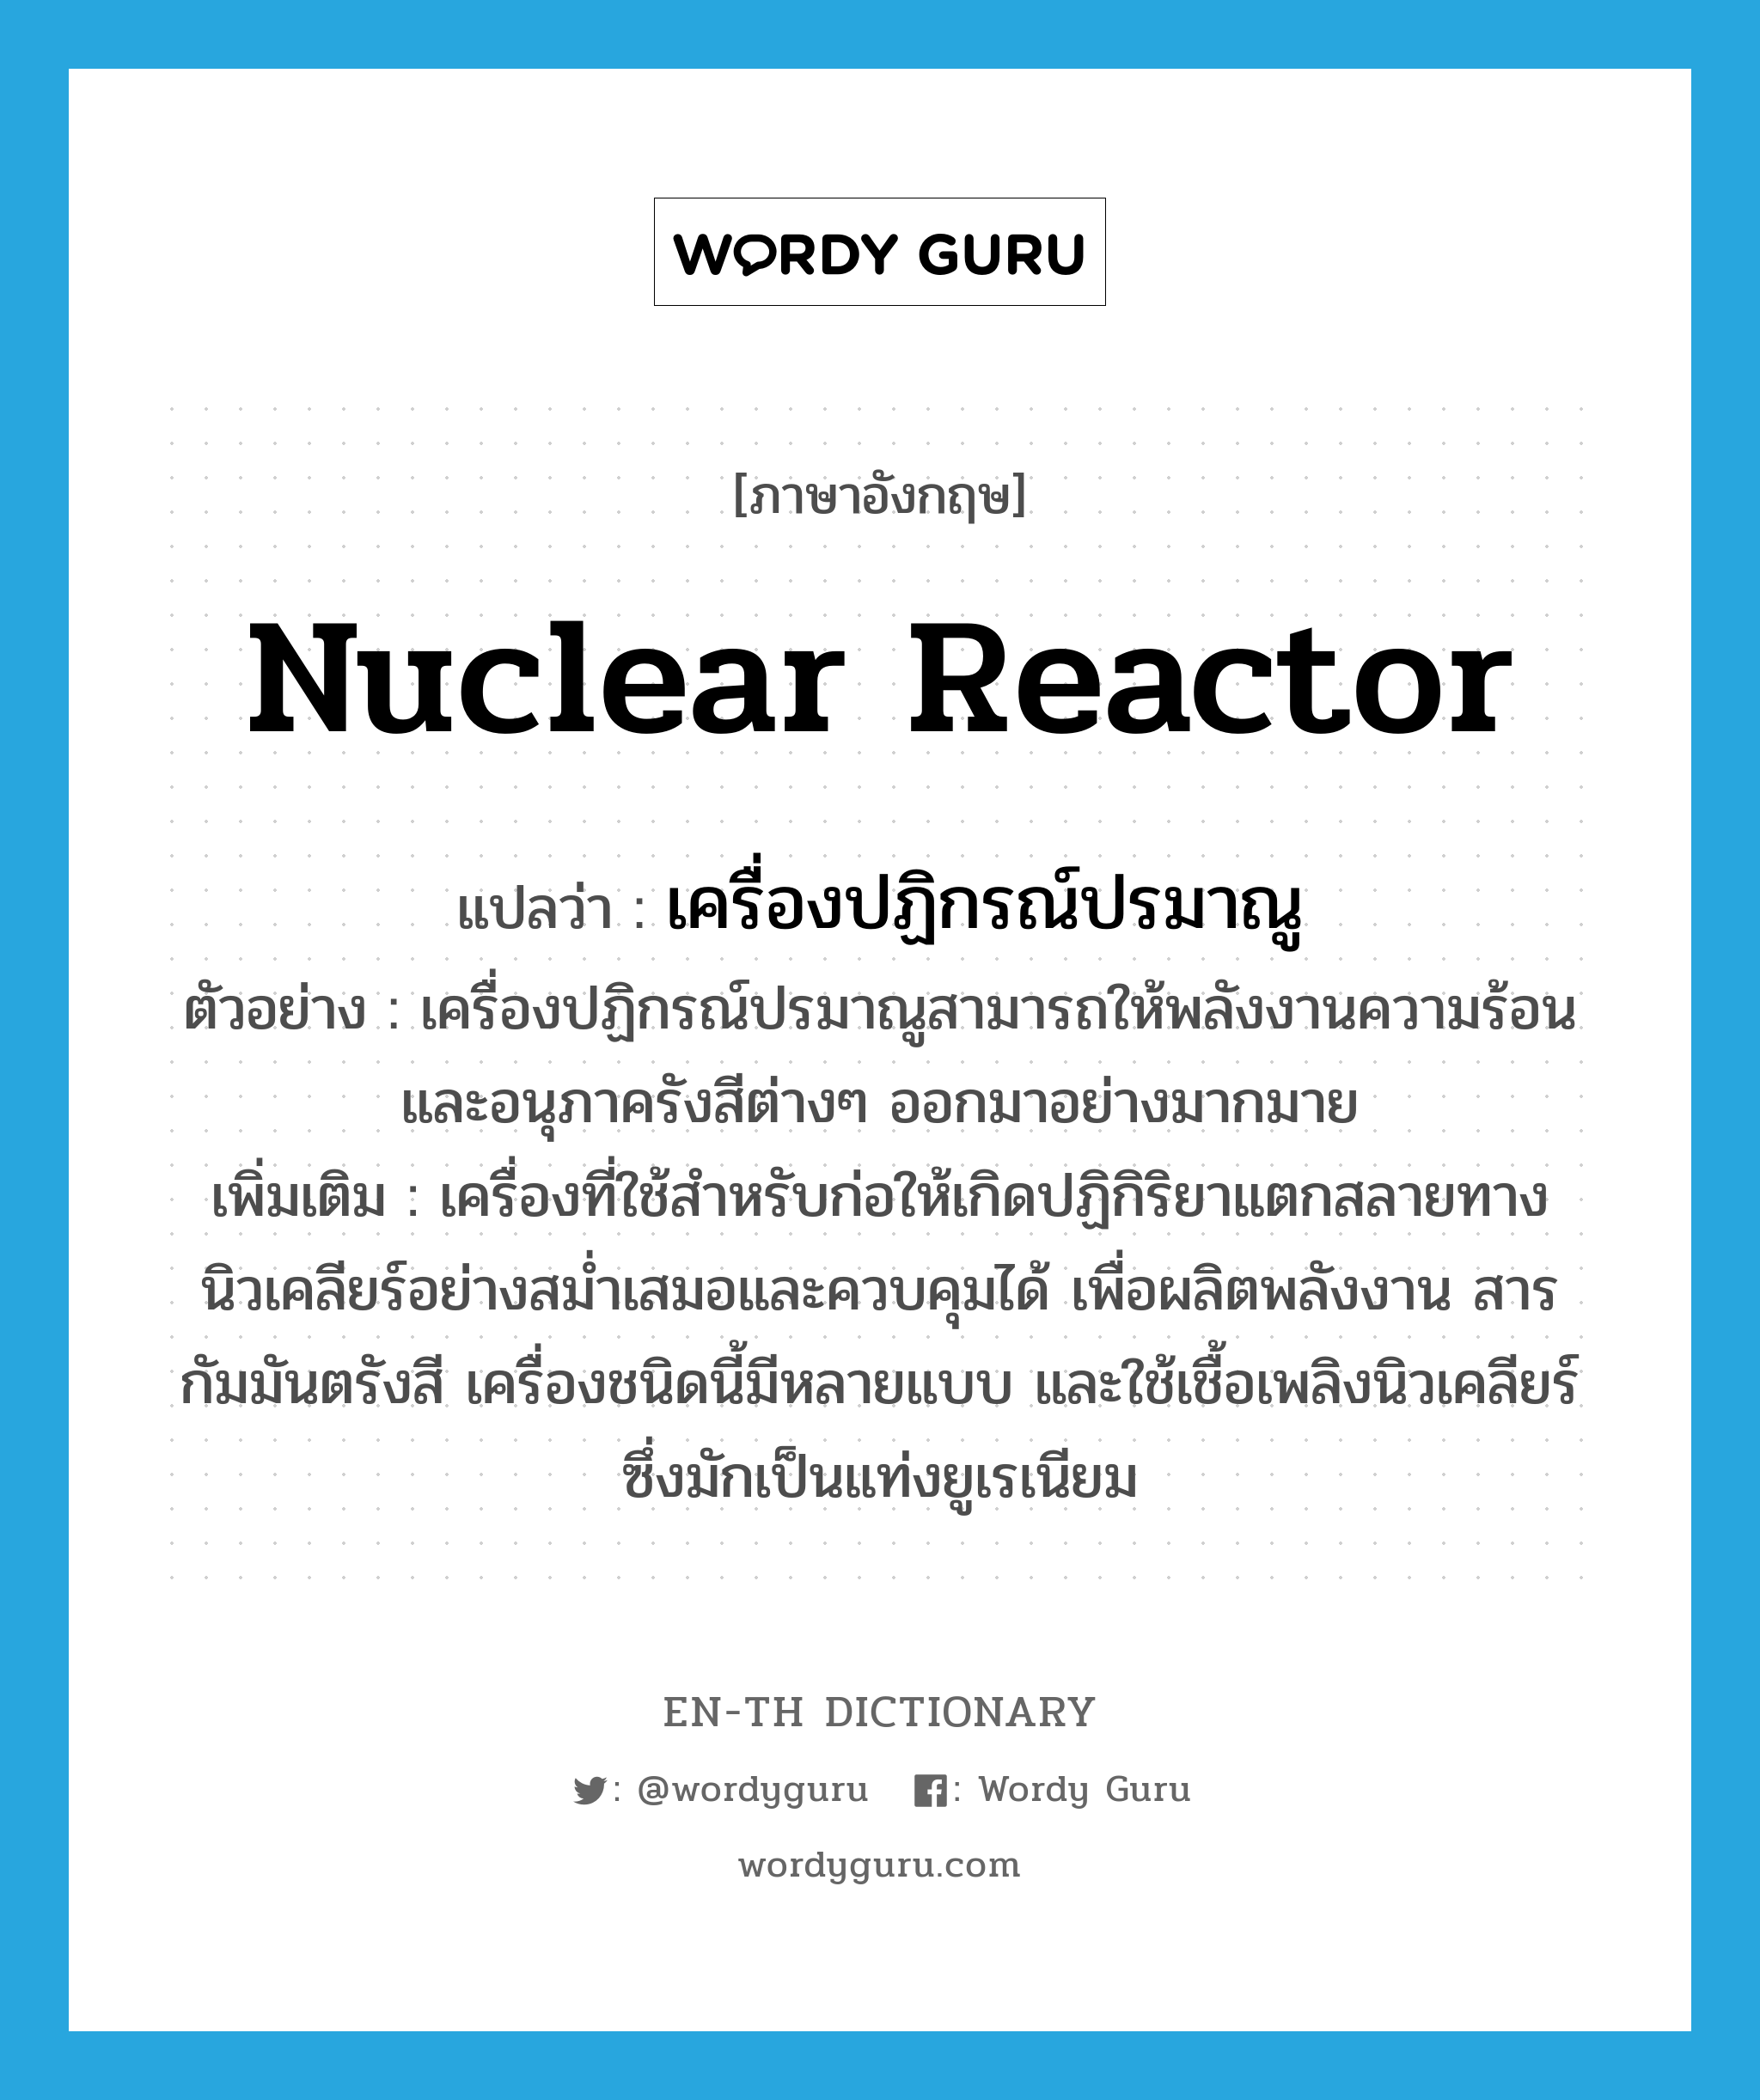 nuclear reactor แปลว่า?, คำศัพท์ภาษาอังกฤษ nuclear reactor แปลว่า เครื่องปฏิกรณ์ปรมาณู ประเภท N ตัวอย่าง เครื่องปฏิกรณ์ปรมาณูสามารถให้พลังงานความร้อนและอนุภาครังสีต่างๆ ออกมาอย่างมากมาย เพิ่มเติม เครื่องที่ใช้สำหรับก่อให้เกิดปฏิกิริยาแตกสลายทางนิวเคลียร์อย่างสม่ำเสมอและควบคุมได้ เพื่อผลิตพลังงาน สารกัมมันตรังสี เครื่องชนิดนี้มีหลายแบบ และใช้เชื้อเพลิงนิวเคลียร์ซึ่งมักเป็นแท่งยูเรเนียม หมวด N